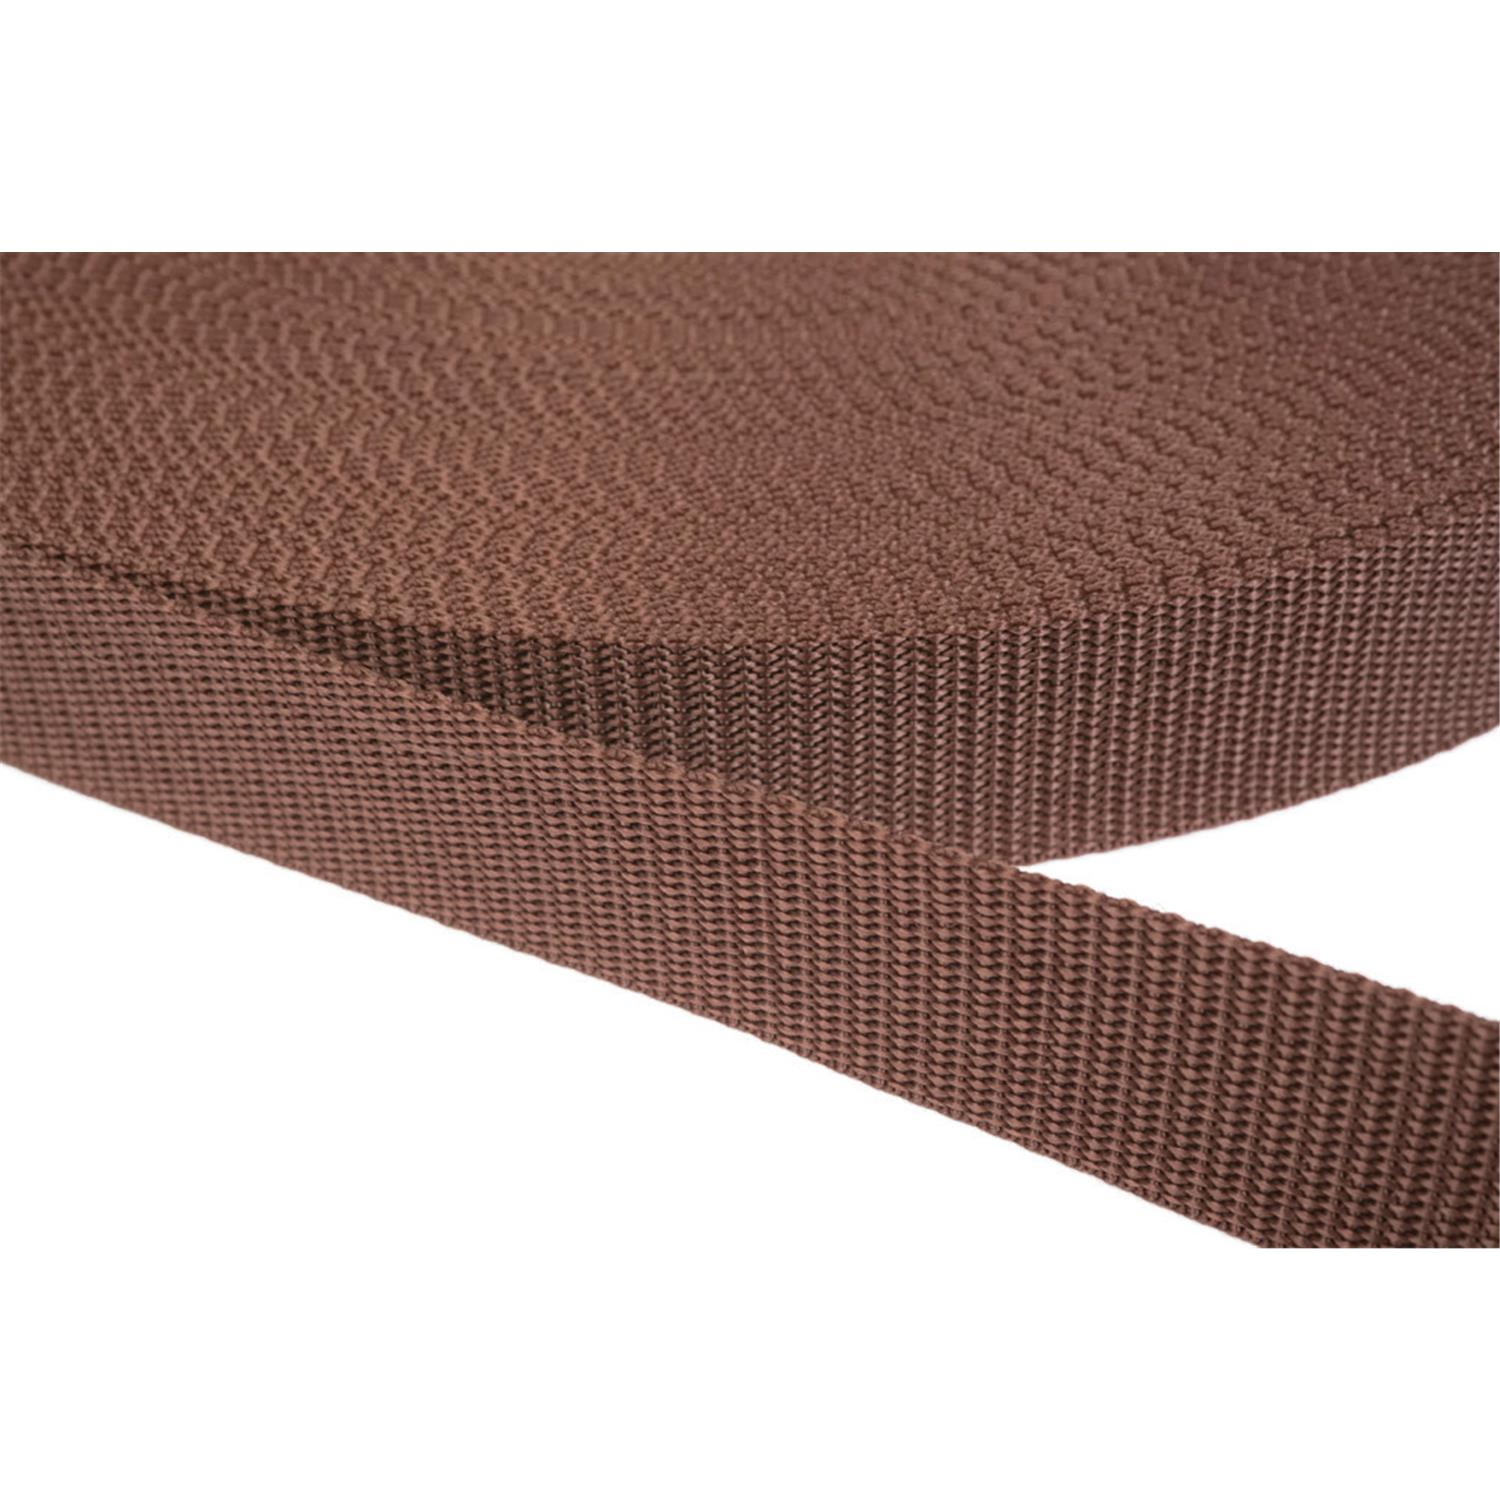 Gurtband 15mm breit aus Polypropylen in 41 Farben 07 - braun 50 Meter